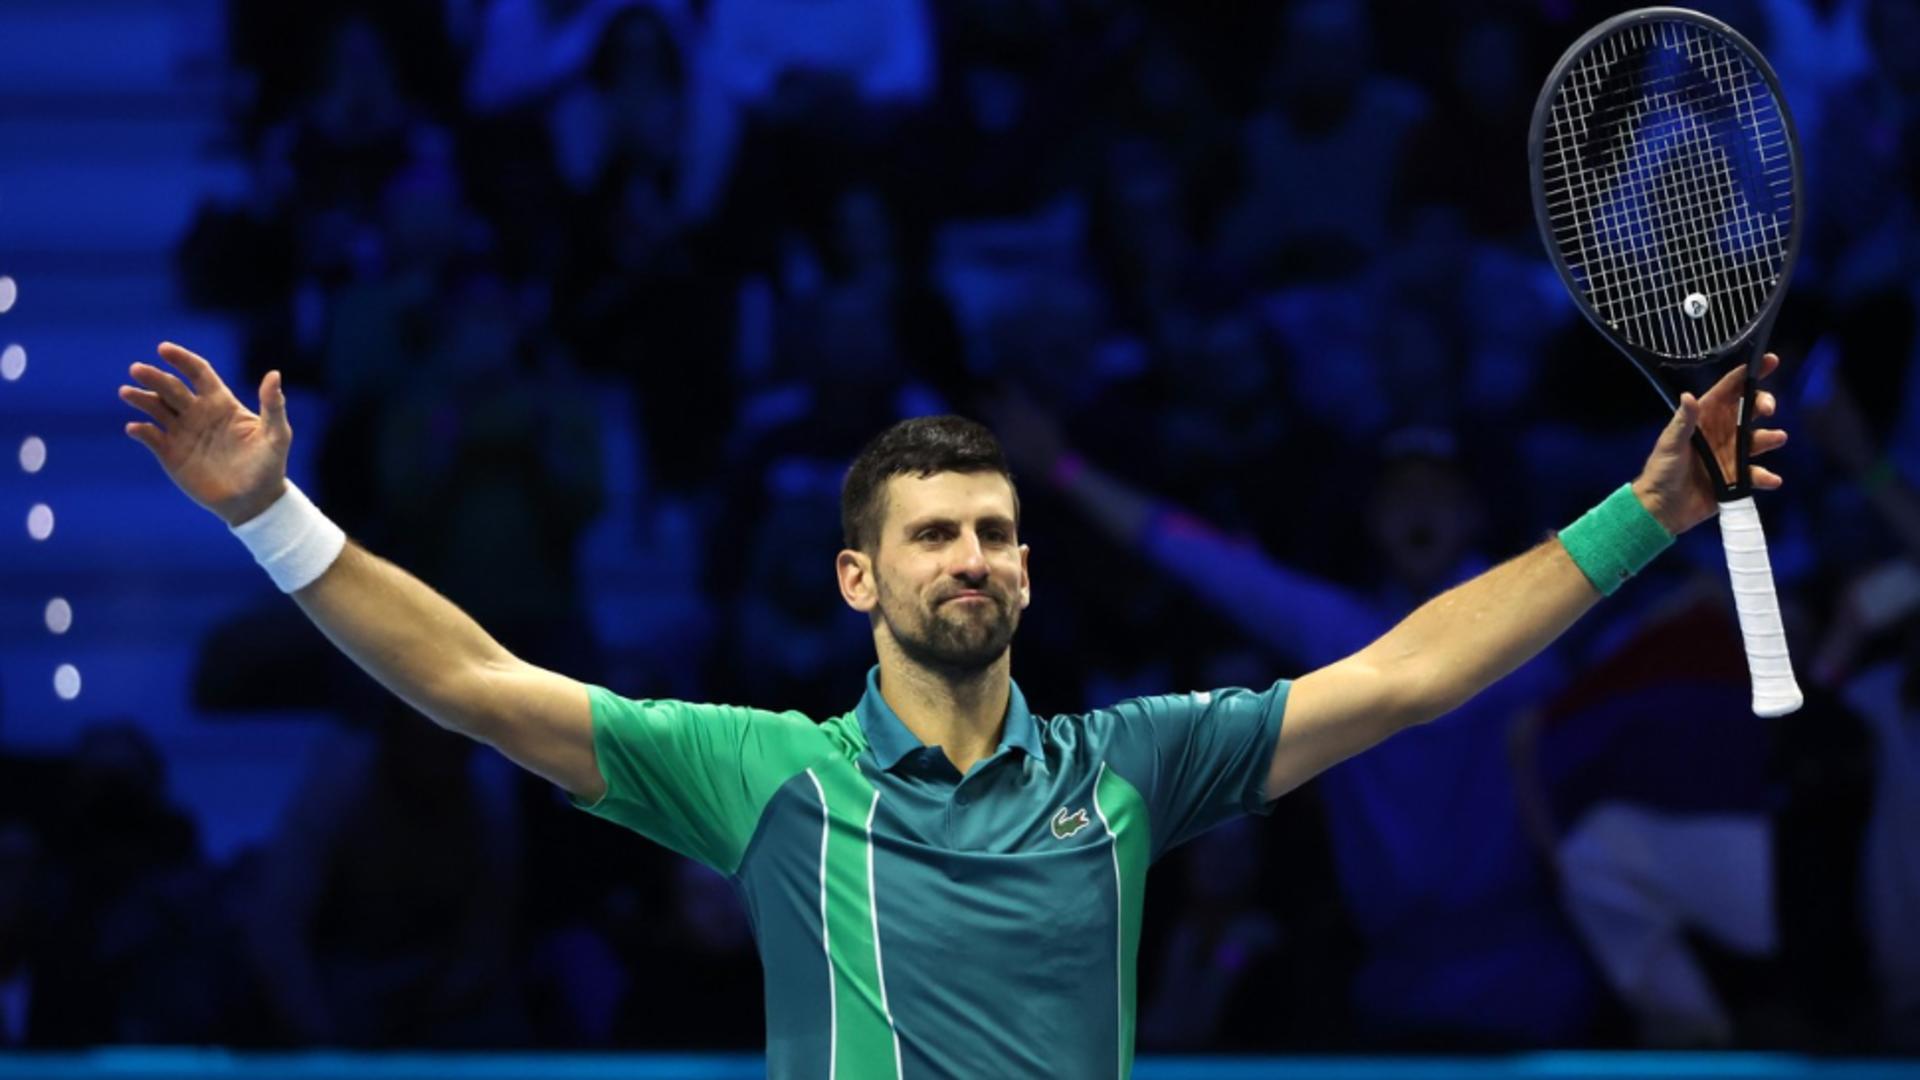 Djokovici a obţinut locul 1 ATP pentru a opta oară, un record. Foto/Profimedia